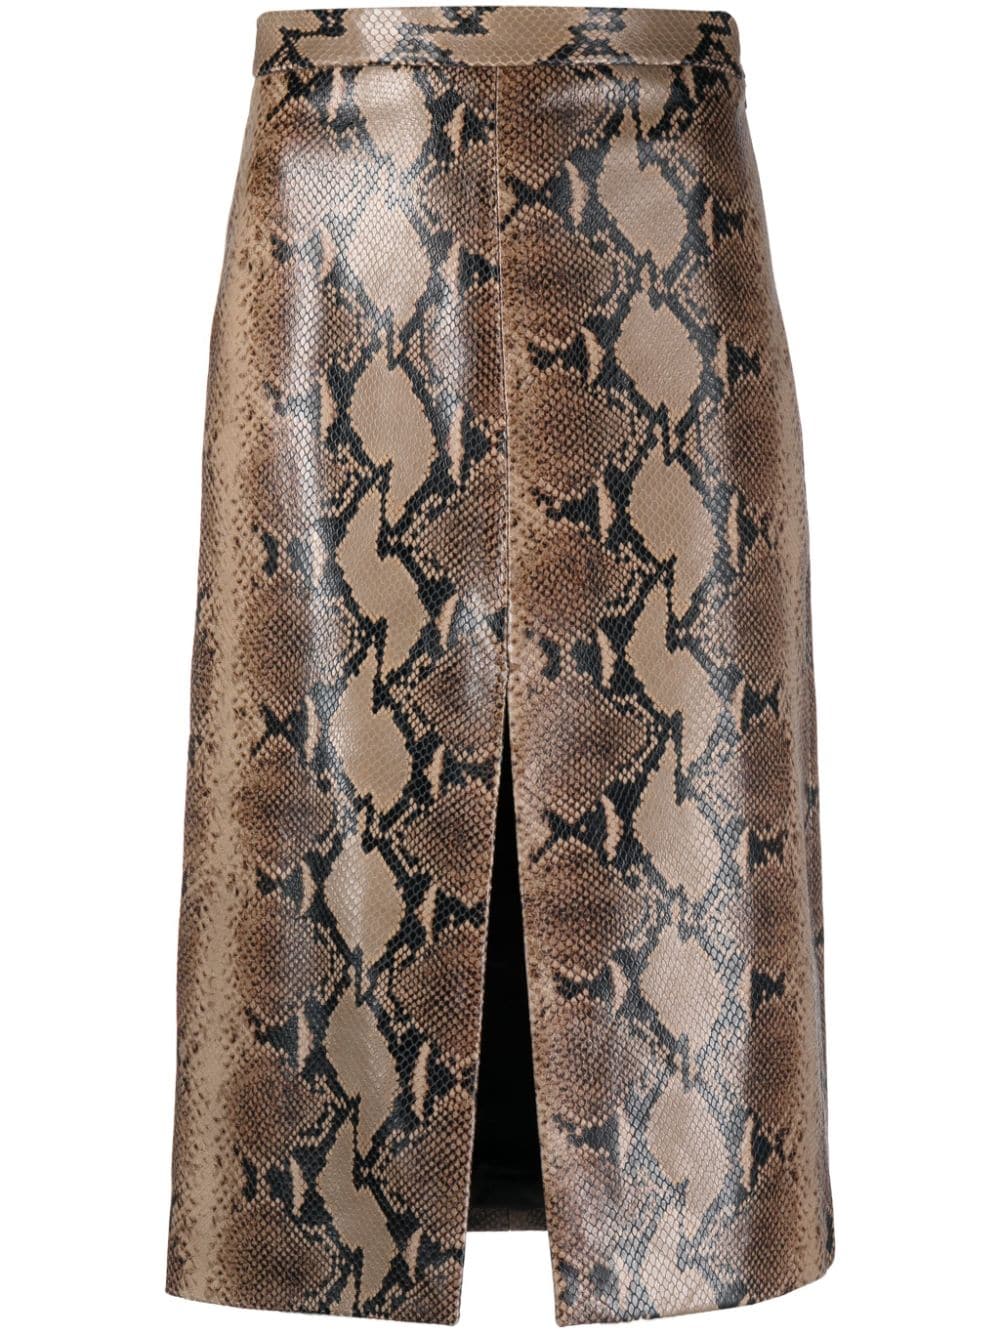 KHAITE The Fraser snakeskin-effect leather skirt - Brown von KHAITE